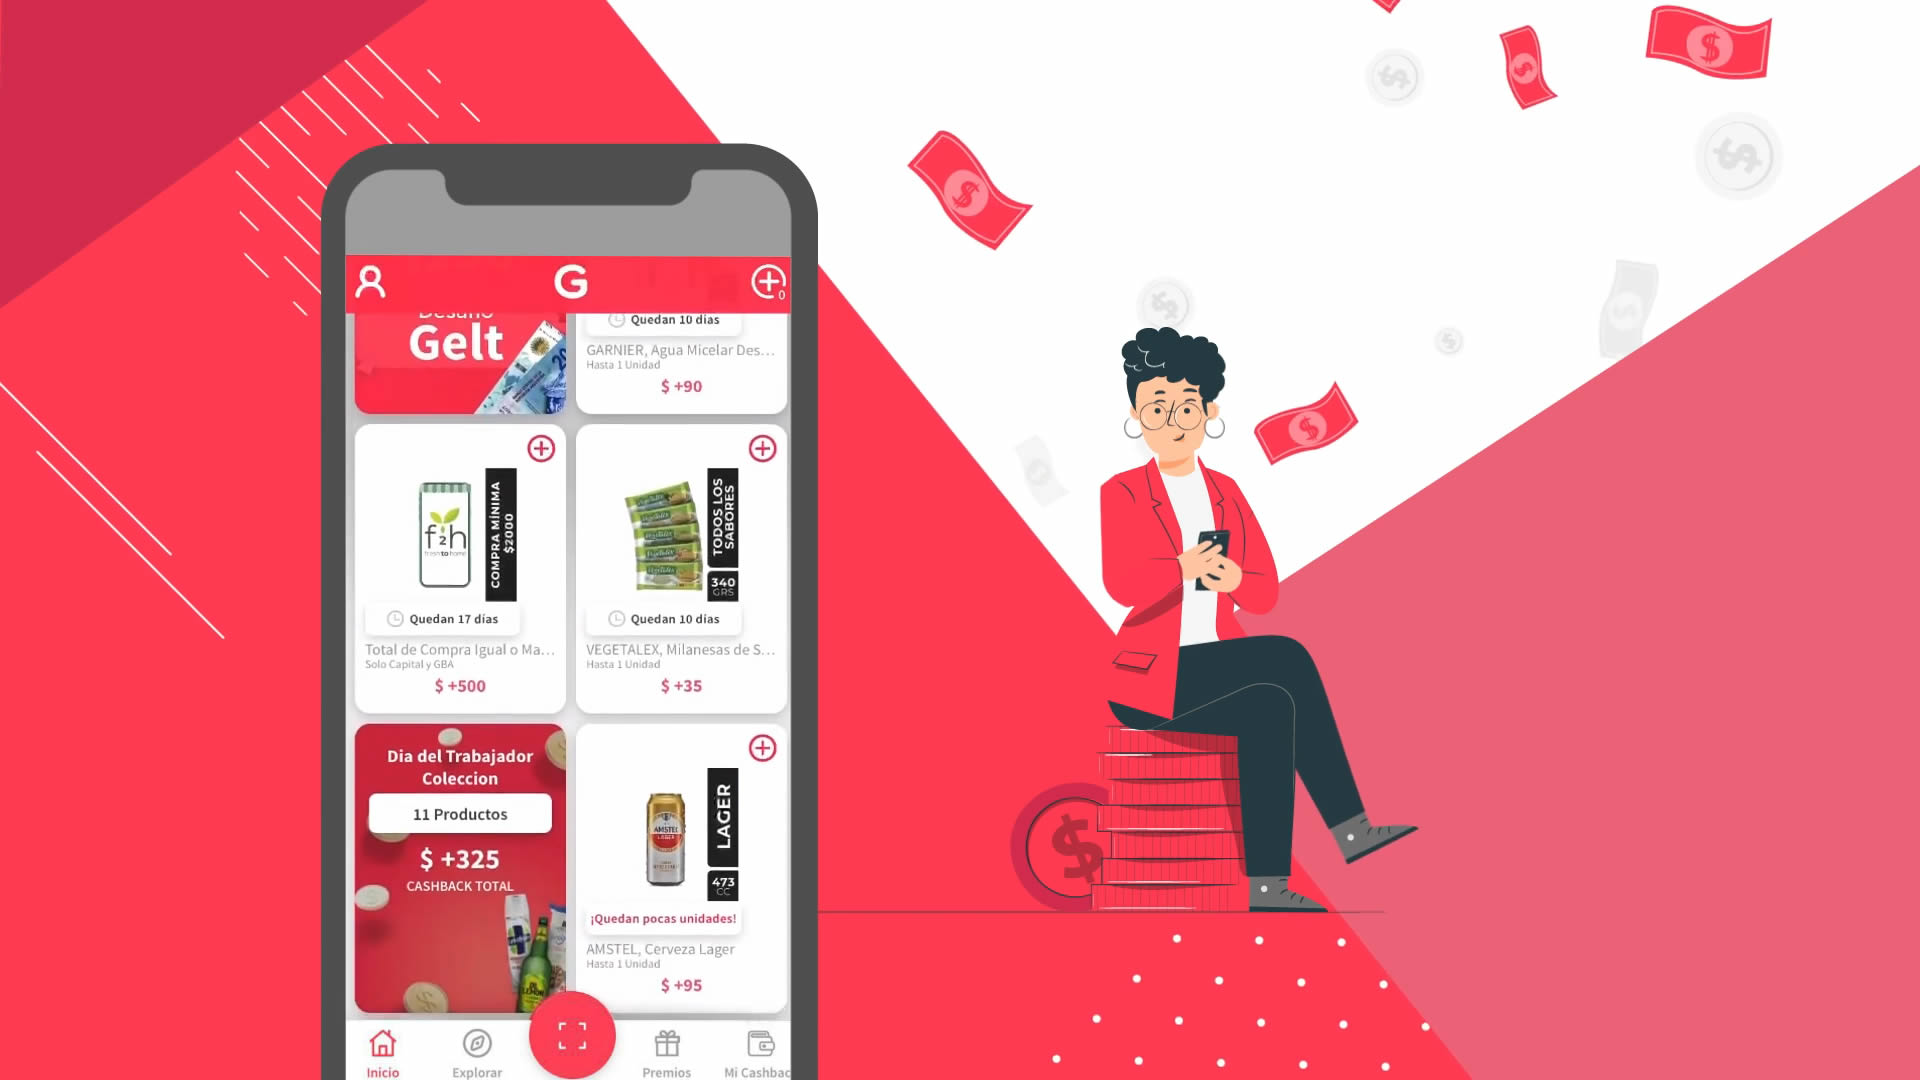 Video for Gelt, a cash-back mobile app